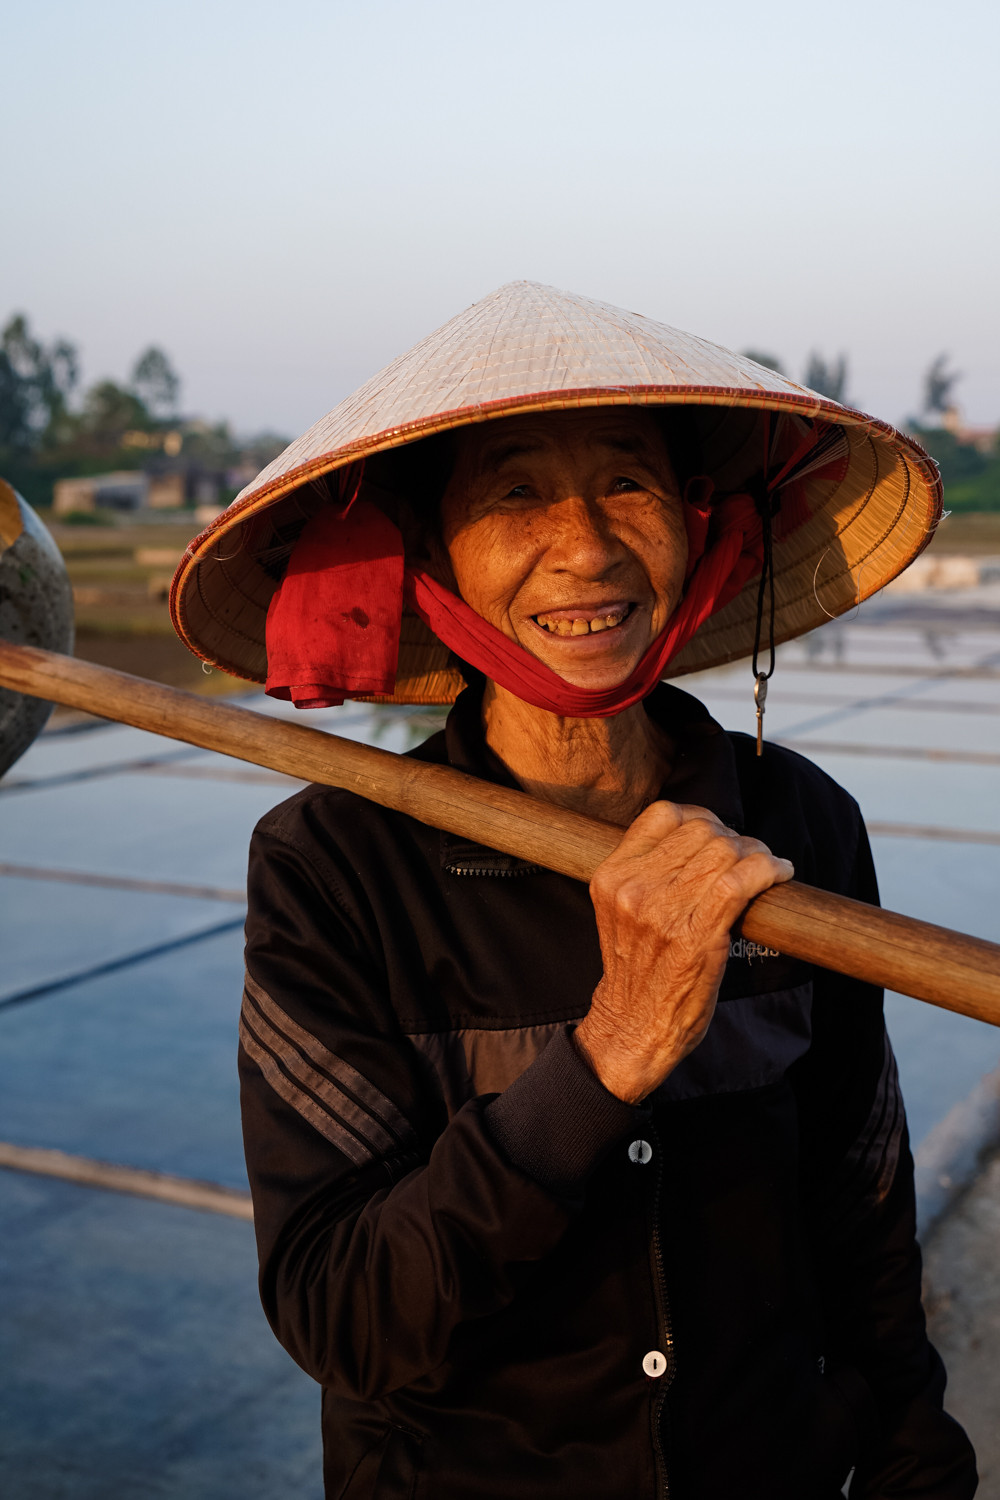 Bà Phan Thị Chinh sinh năm 1944, đã làm nghề muối từ năm 18 tuổi. Đến nay con cái đều đi tìm công việc khác, một mình bà vẫn gắn bó với nghề muối. Mỗi ngày bà Chinh làm được khoảng 3 yến muối mang lại thu nhập 45 nghìn/ngày. Ảnh: Le Thang